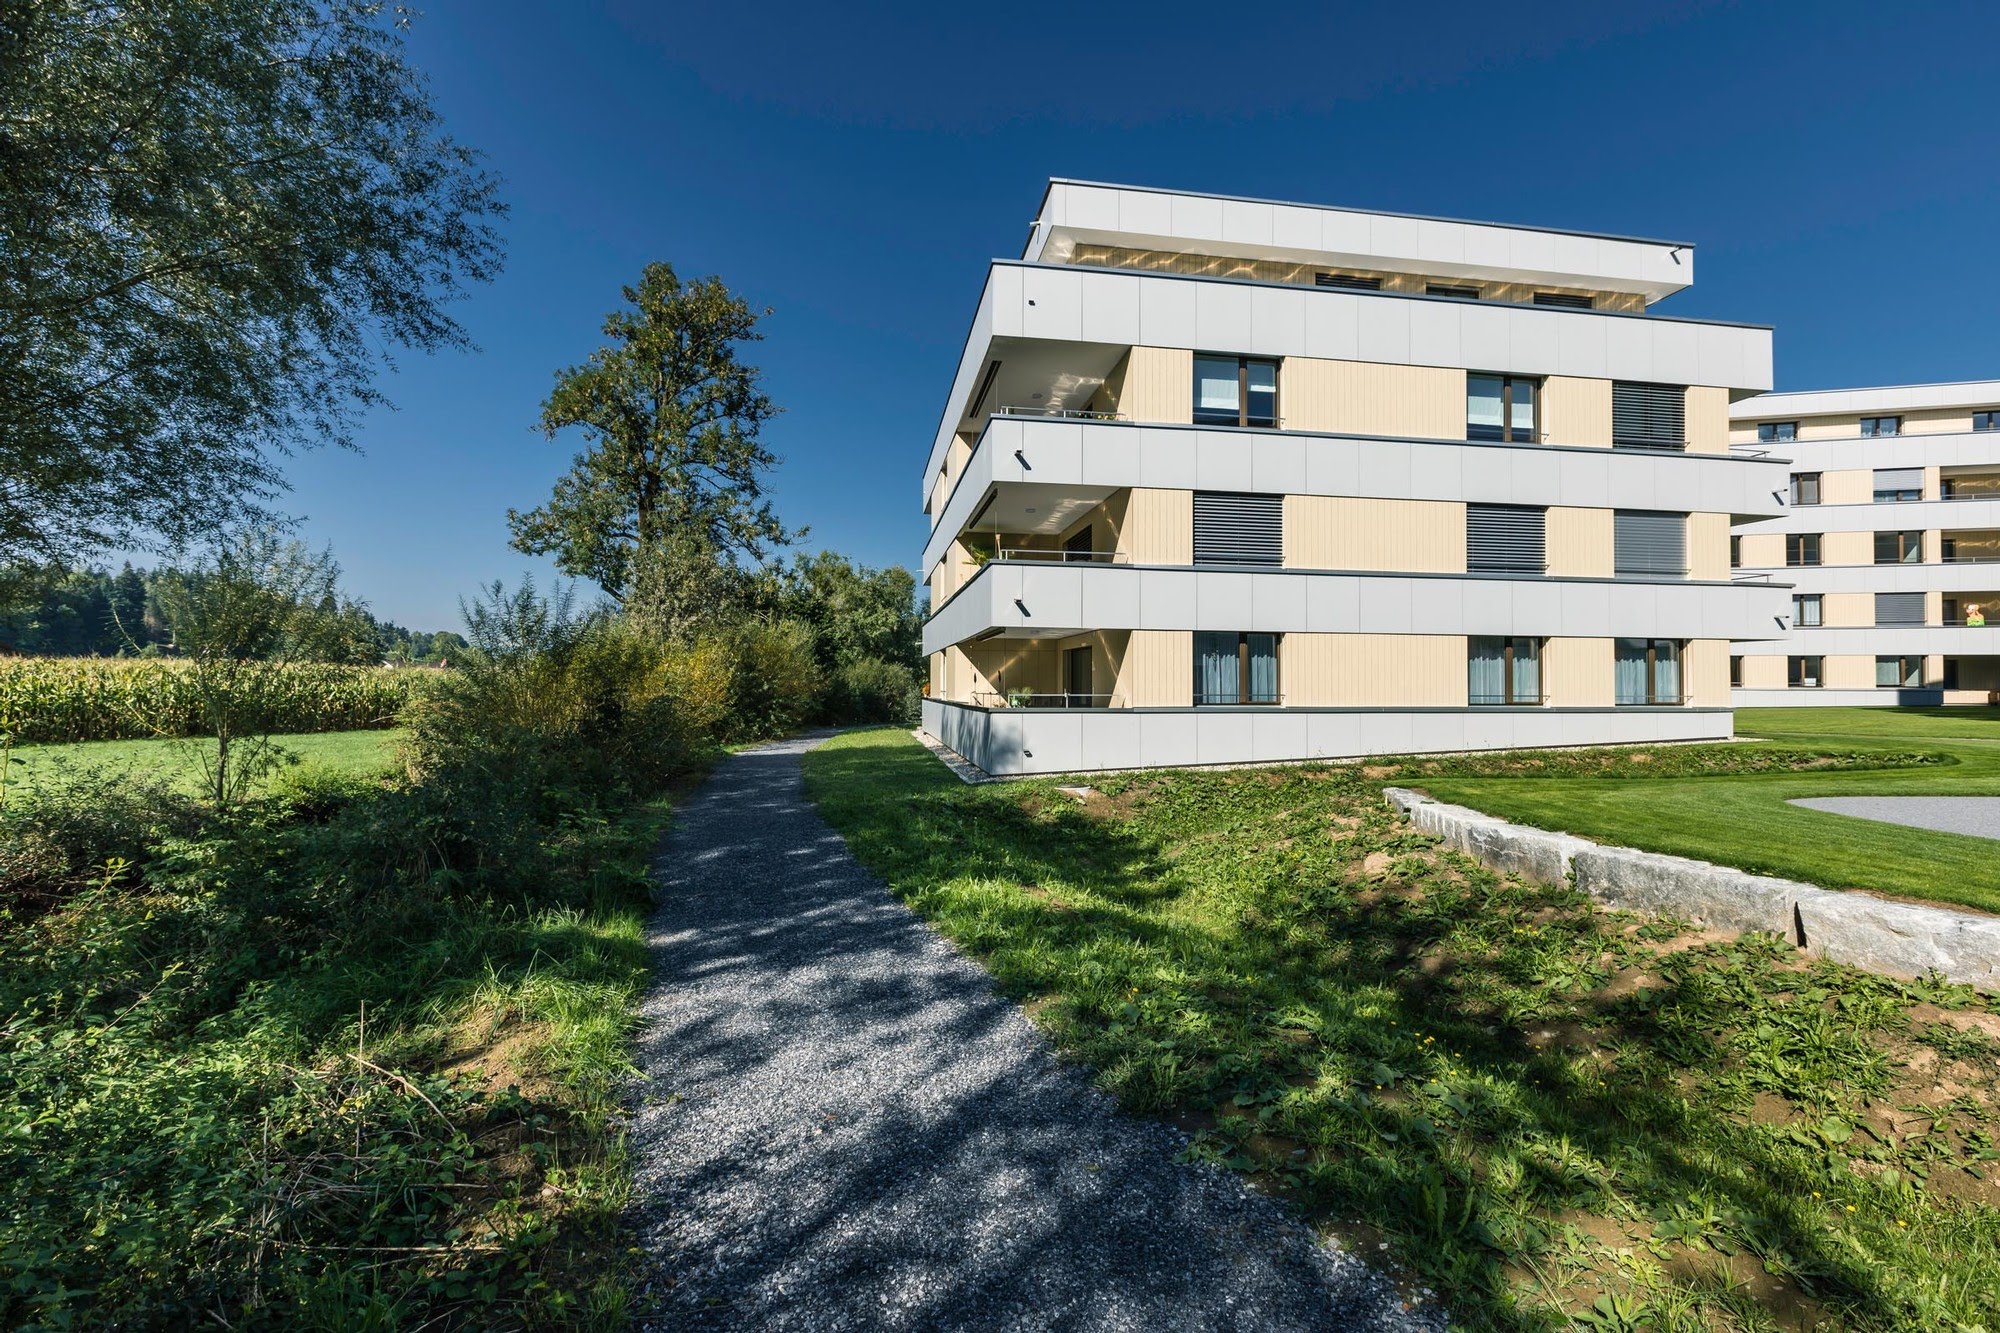 Wohnen MFH Wohnüberbauung Freiehof in Ruswil Architektur,Wohnungsbau,Wohnhäuser,Einfamilienhäuser,Mehrfamilienhäuser